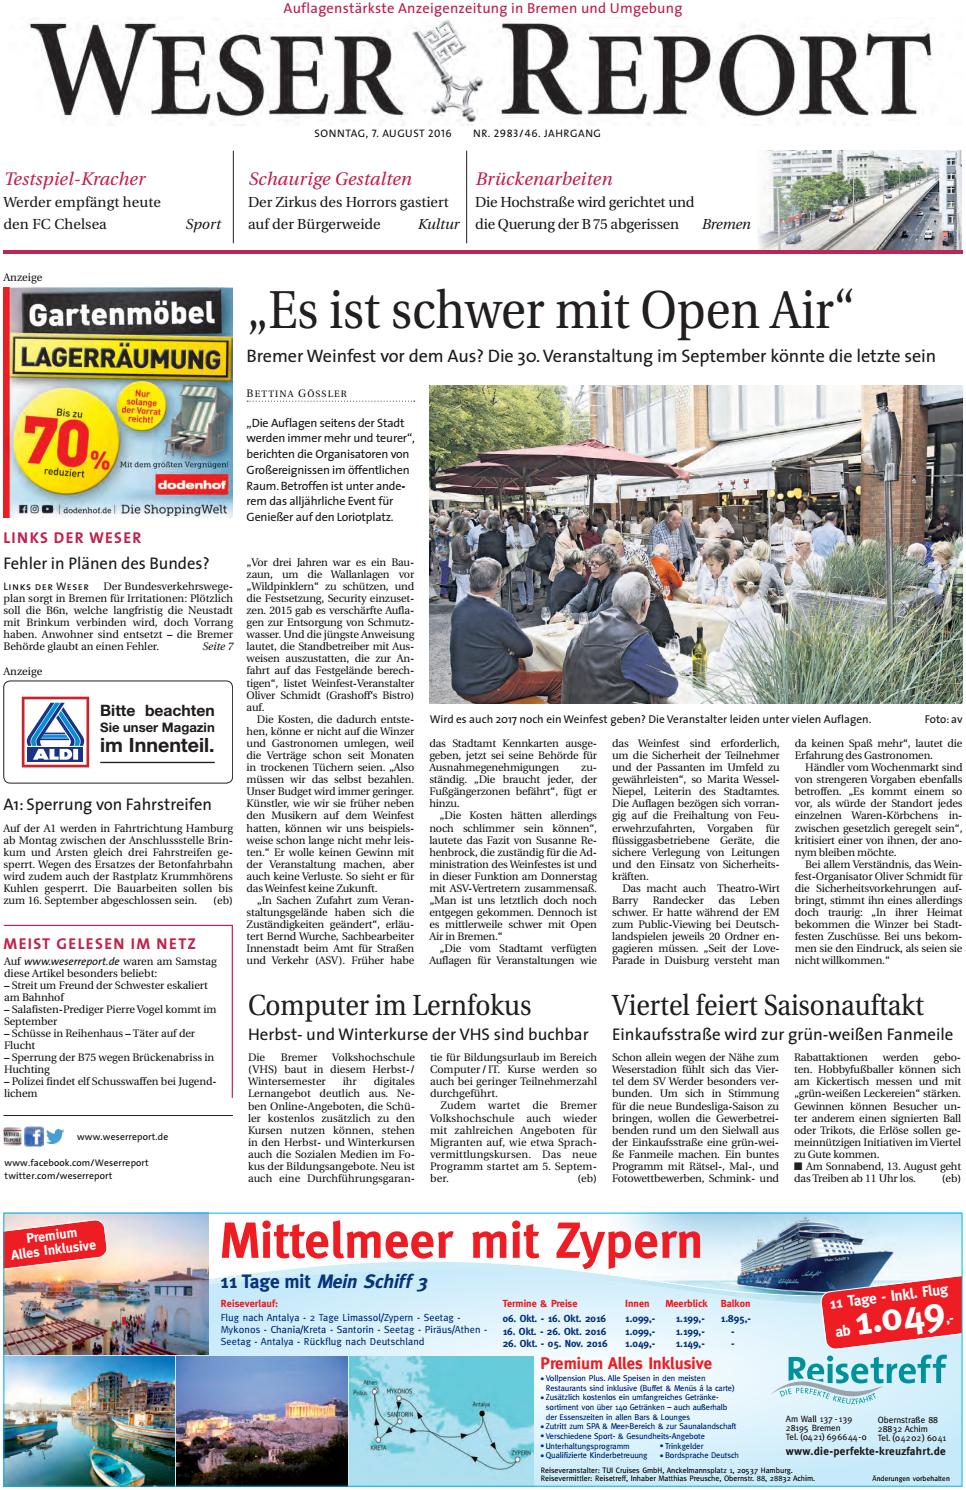 Otto Gartenkatalog Schön Weser Report Links Der Weser Vom 07 08 2016 by Kps